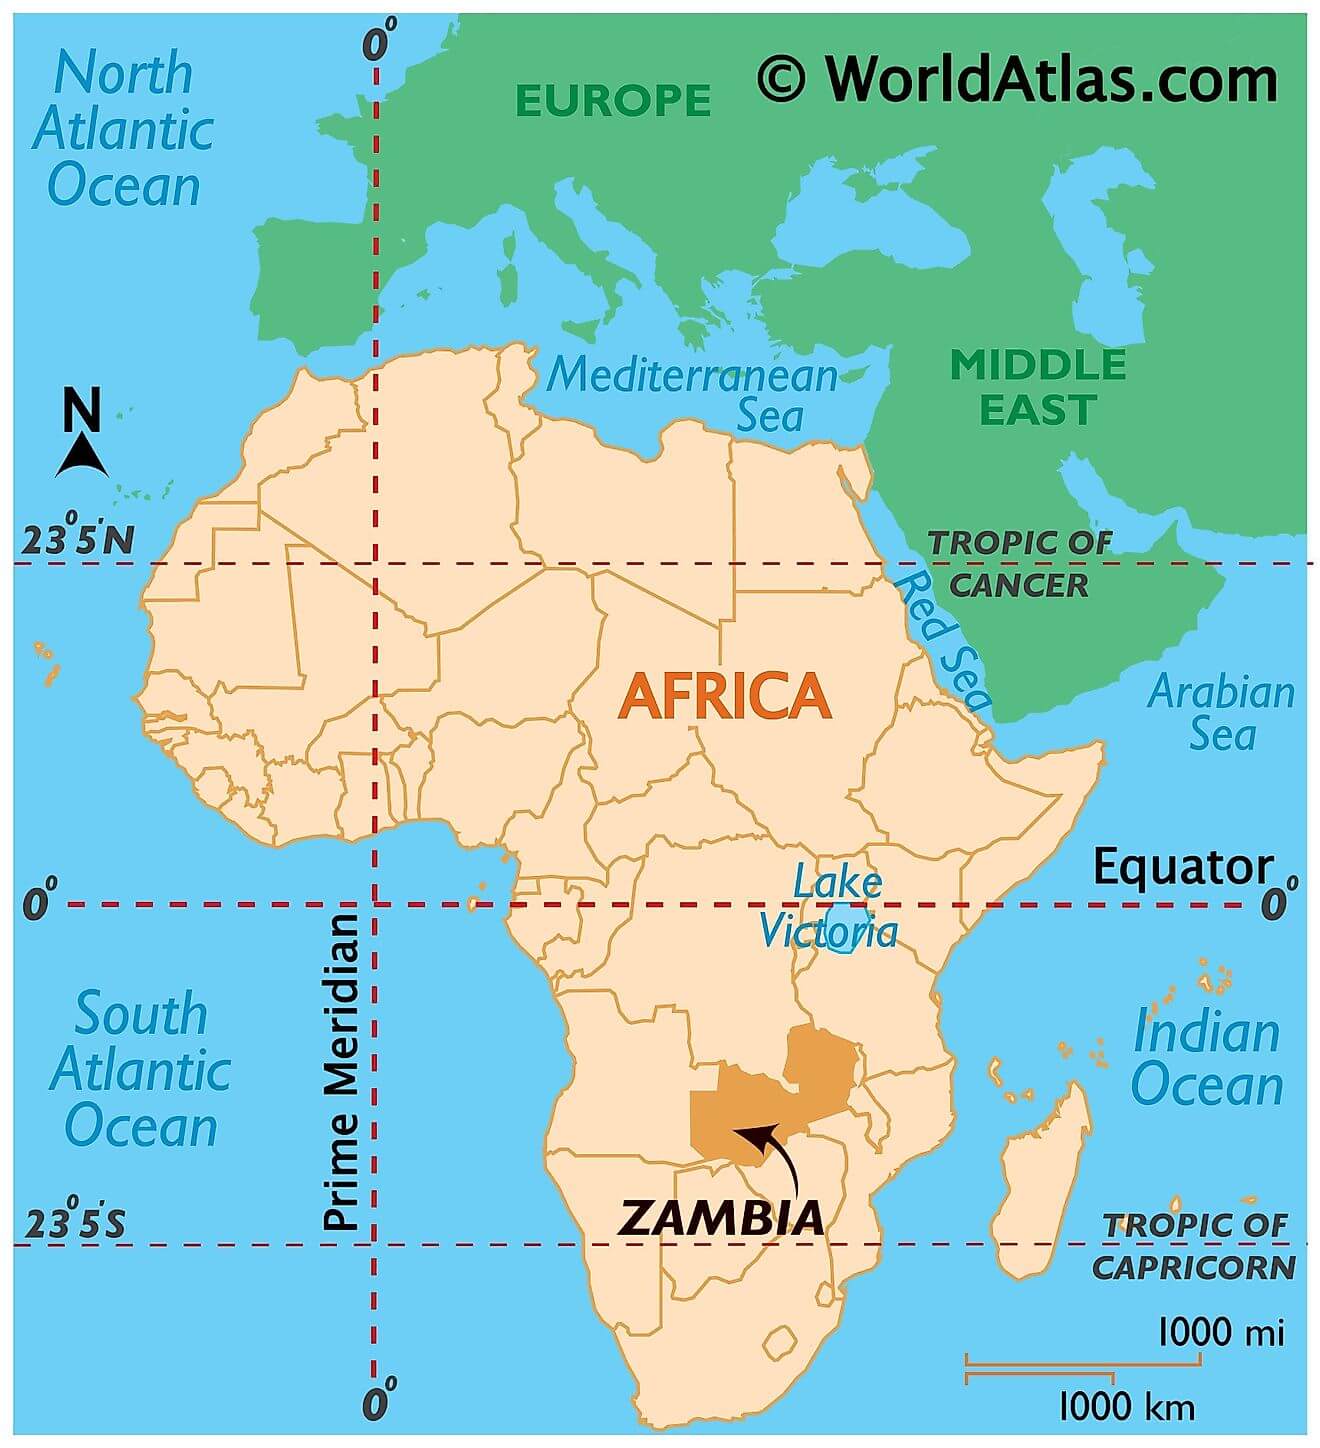 Zambia ở đâu?